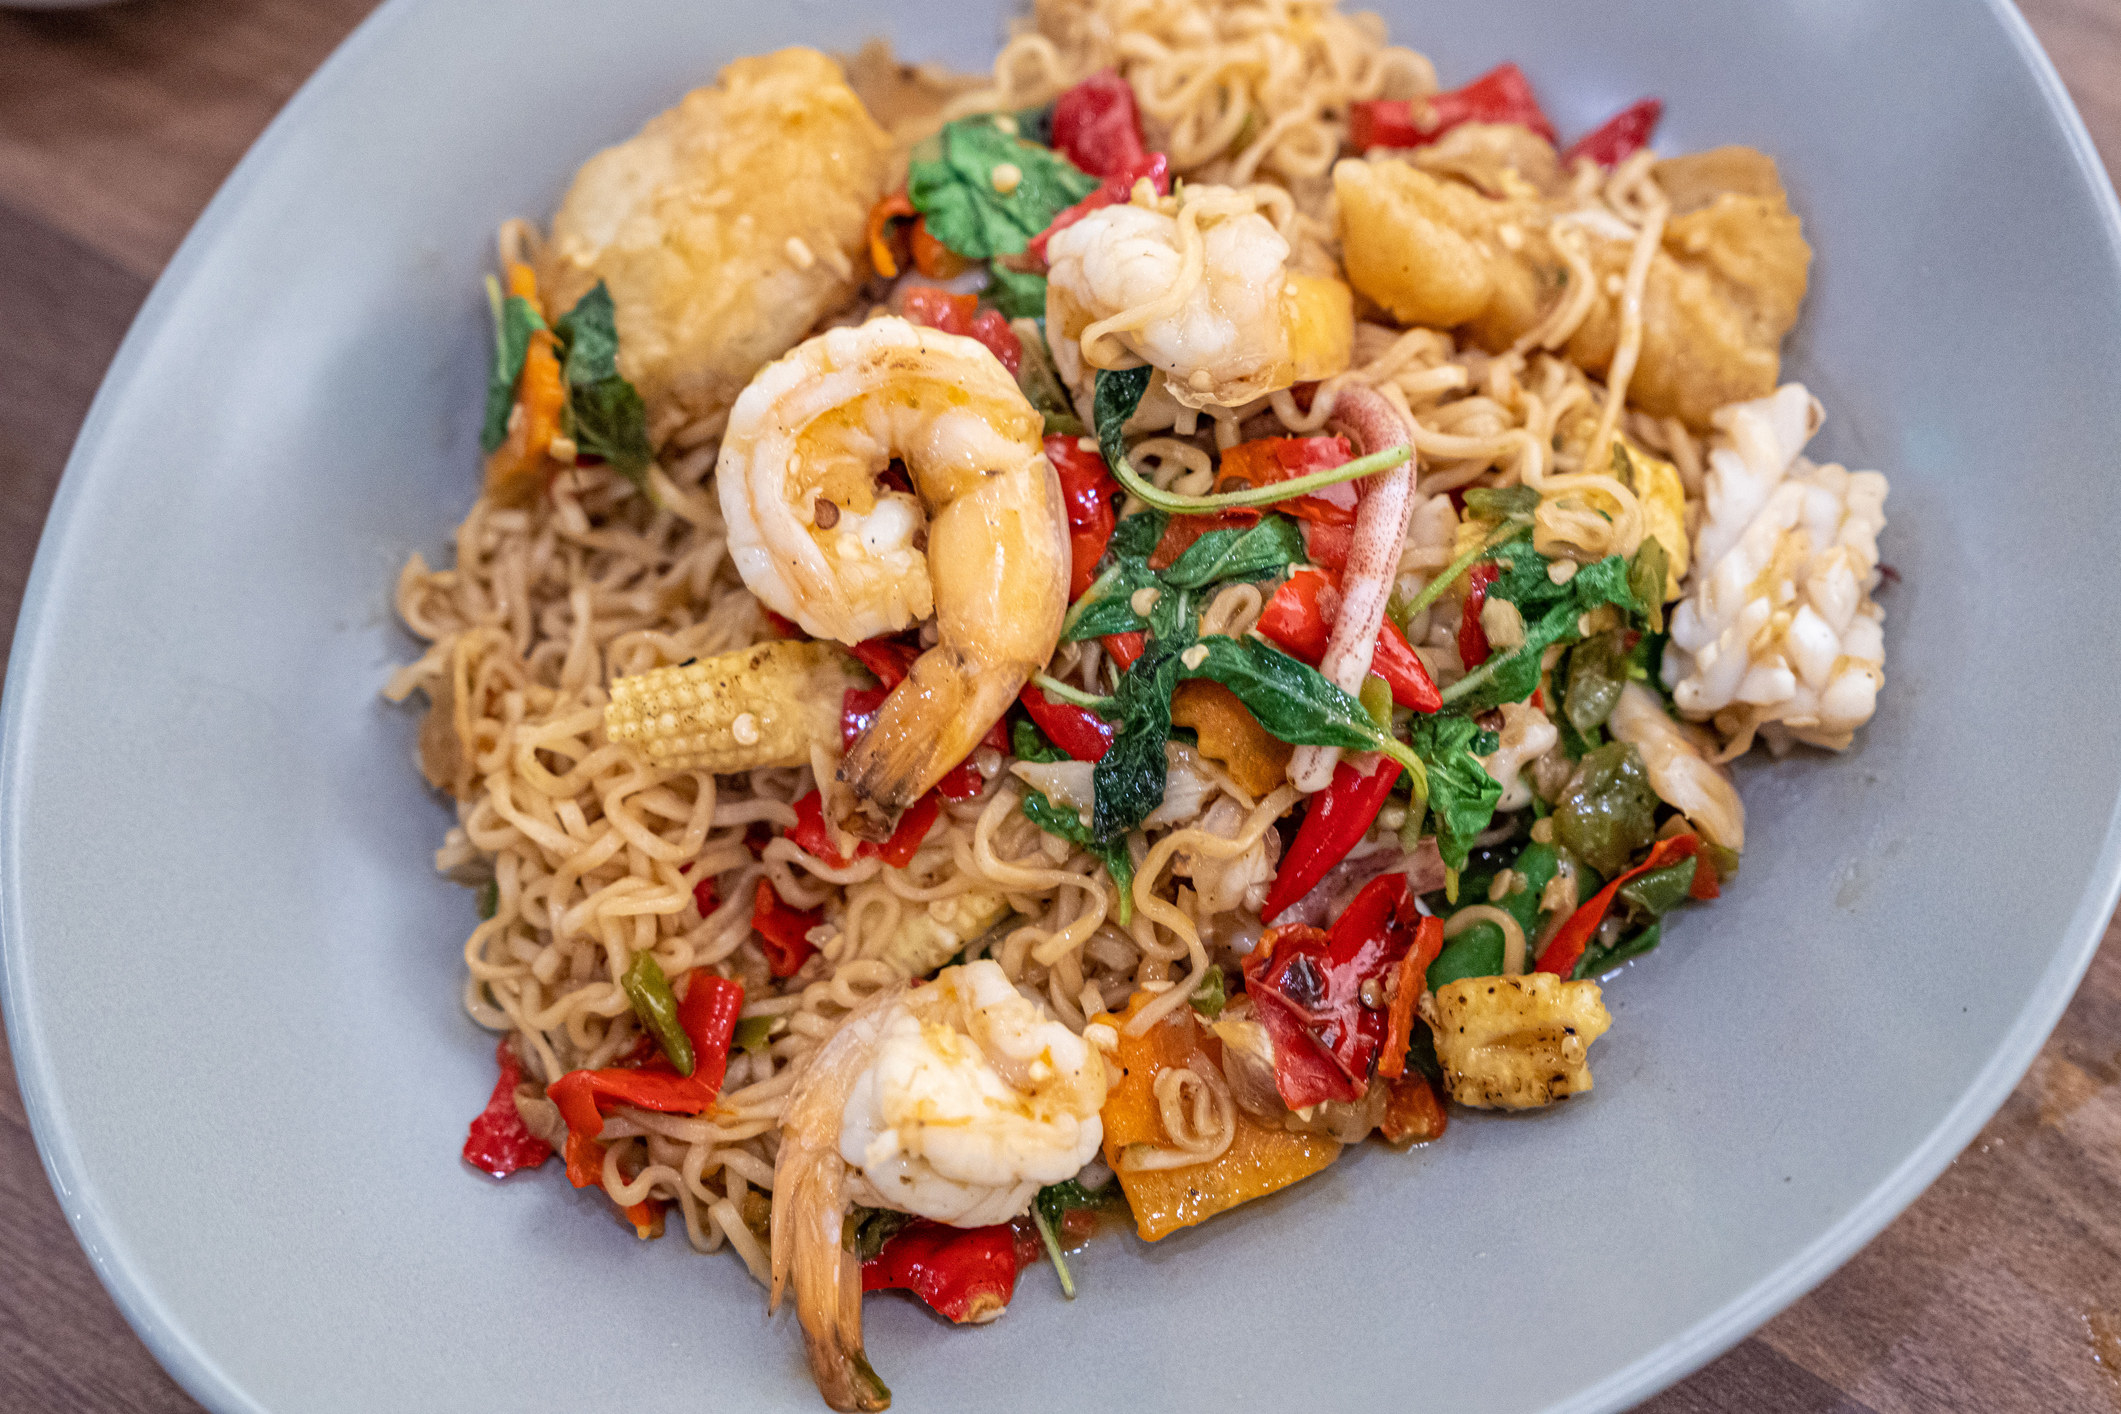 Shrimp stir fry noodles and vegetables